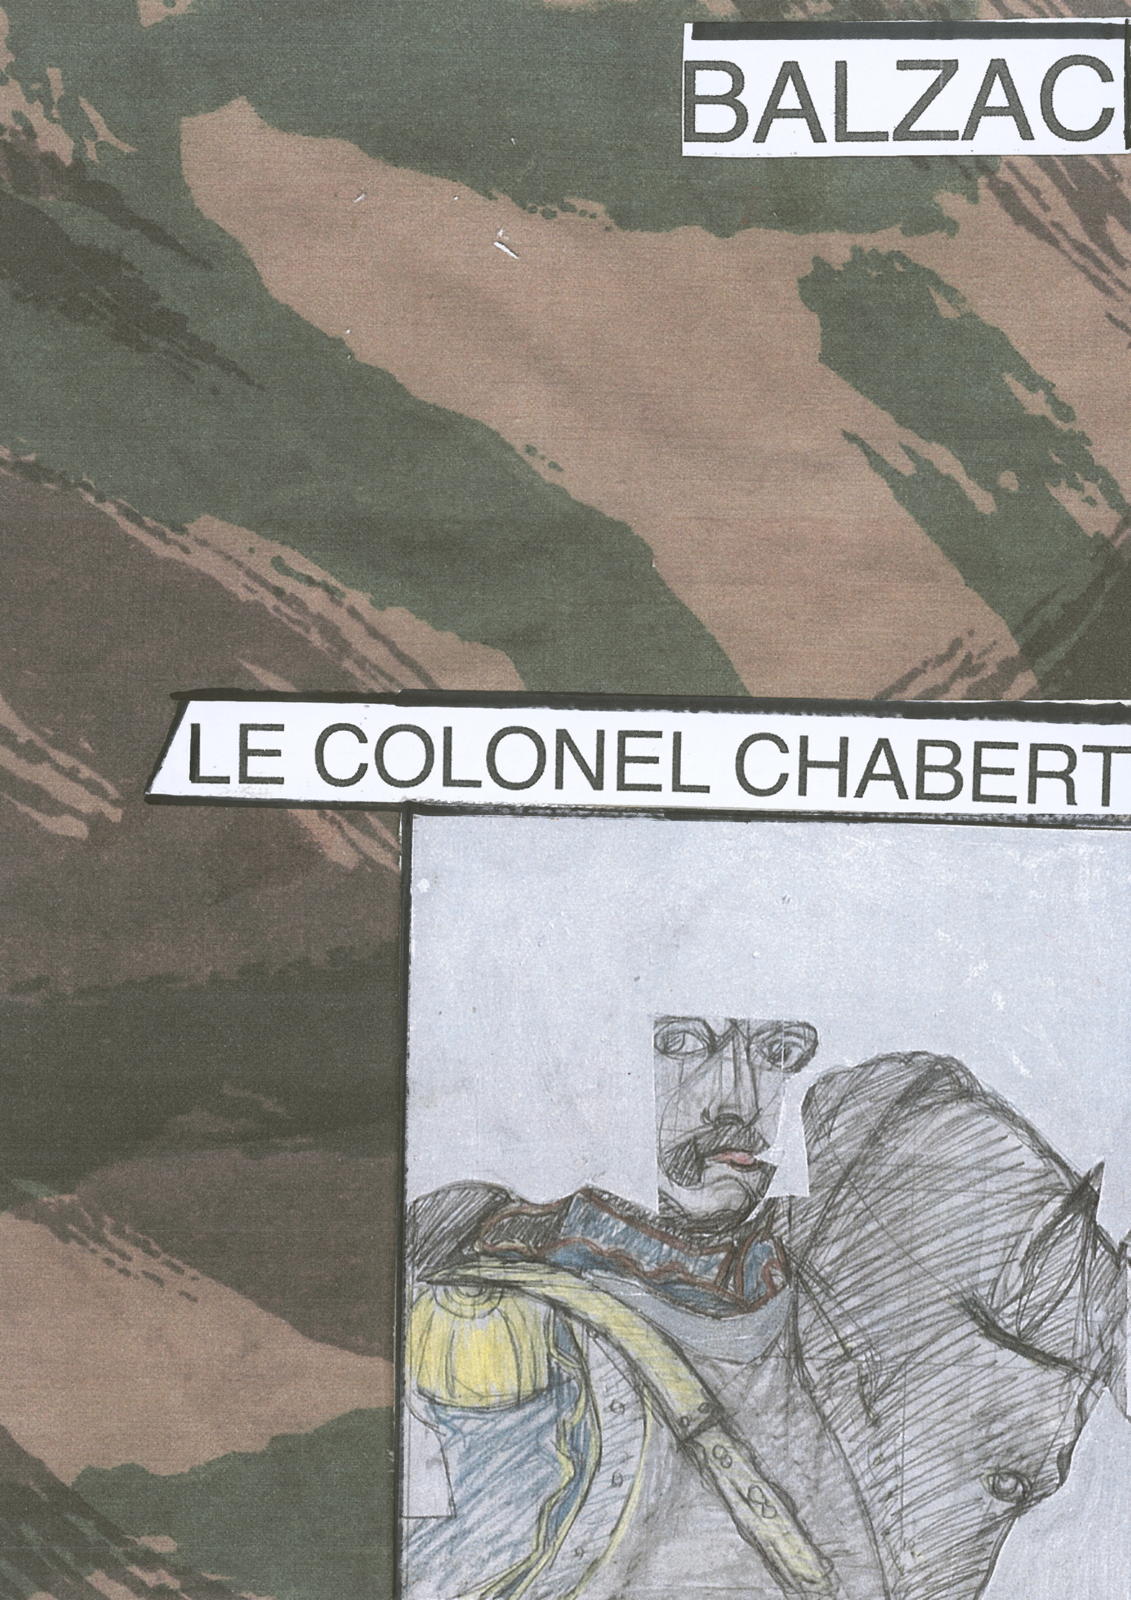 Balzac - Le Colonel Chabert, 2021